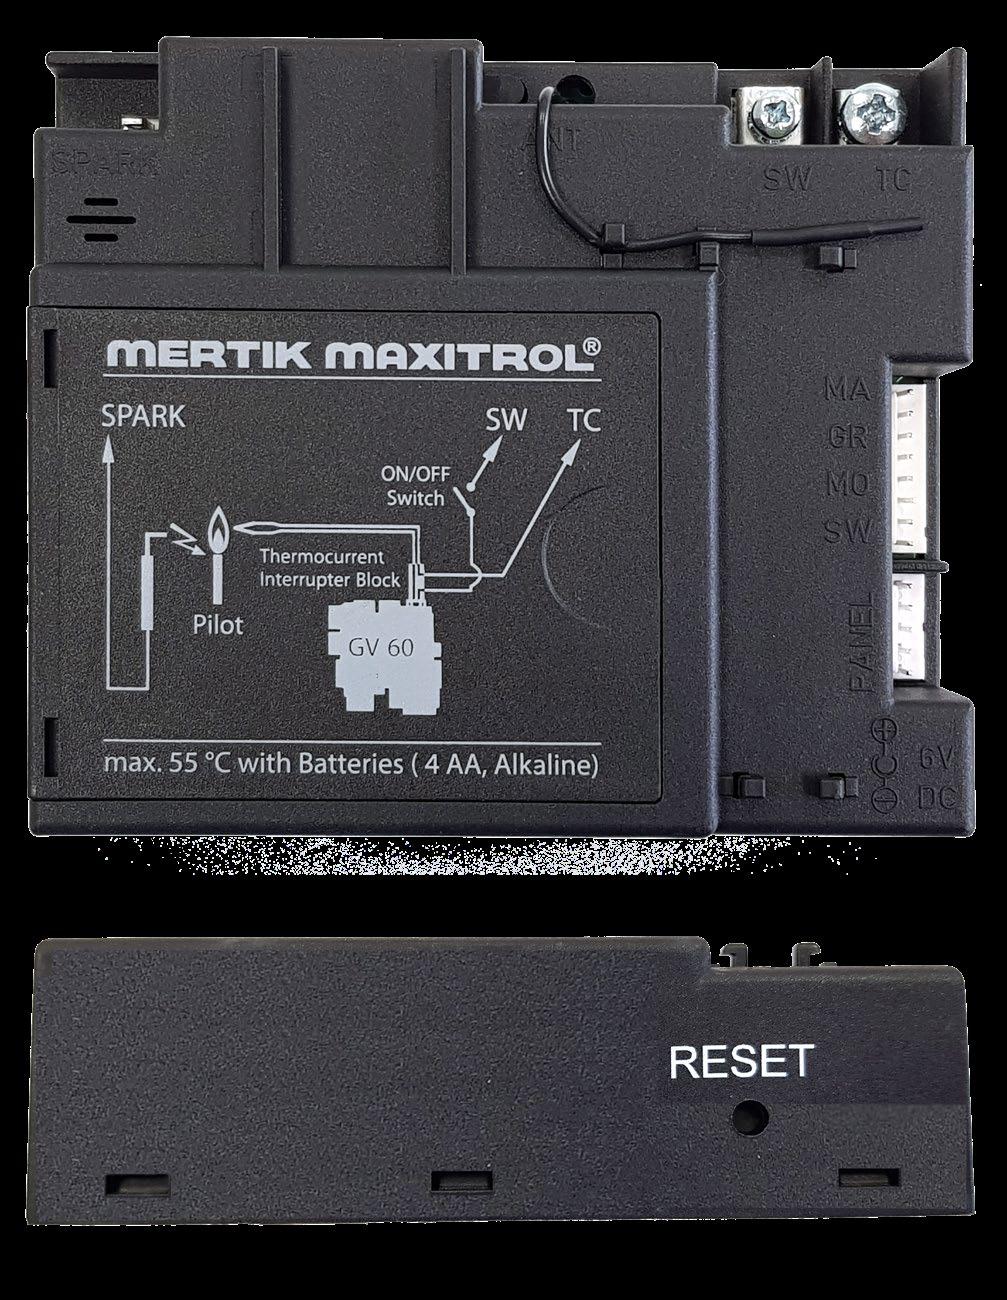 De ontvanger en de afstandsbediening worden gevoed door batterijen. Voor de ontvanger zijn 4 penlite (type AA) batterijen nodig; voor de afstandsbediening 2 penlites (type AAA).